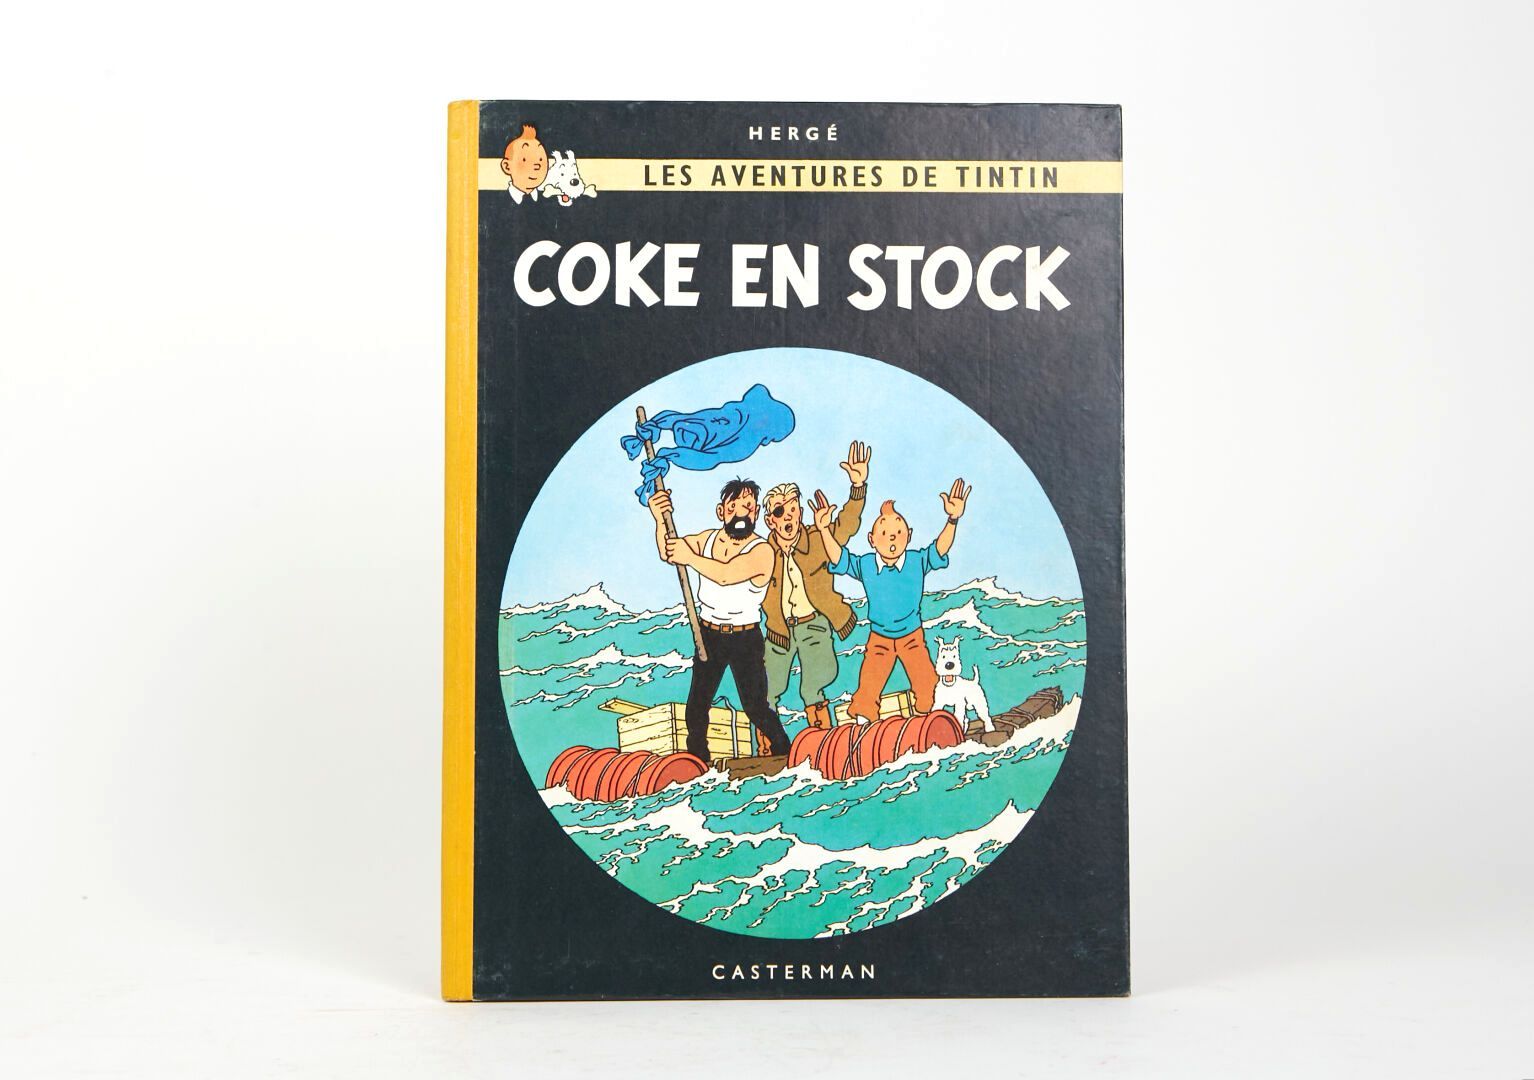 Null "可口可乐的股票"。比利时E.O.1958
黄色背面。第二版B24(Mat)。 
状况良好。

Hergé/Tintinimaginatio 2023